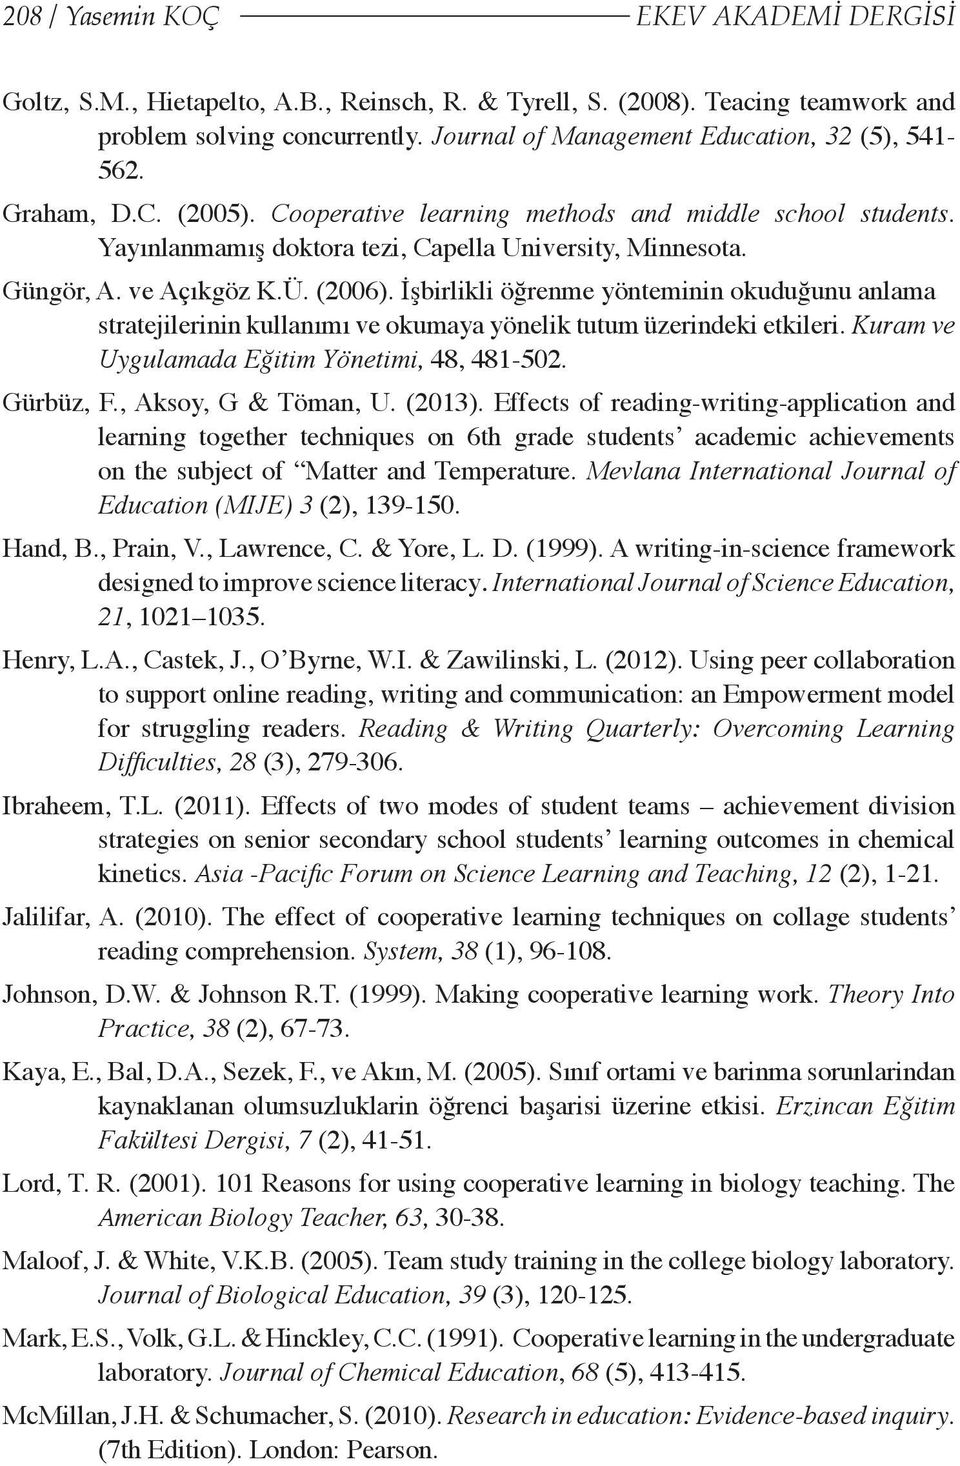 ve Açıkgöz K.Ü. (2006). İşbirlikli öğrenme yönteminin okuduğunu anlama stratejilerinin kullanımı ve okumaya yönelik tutum üzerindeki etkileri. Kuram ve Uygulamada Eğitim Yönetimi, 48, 481-502.